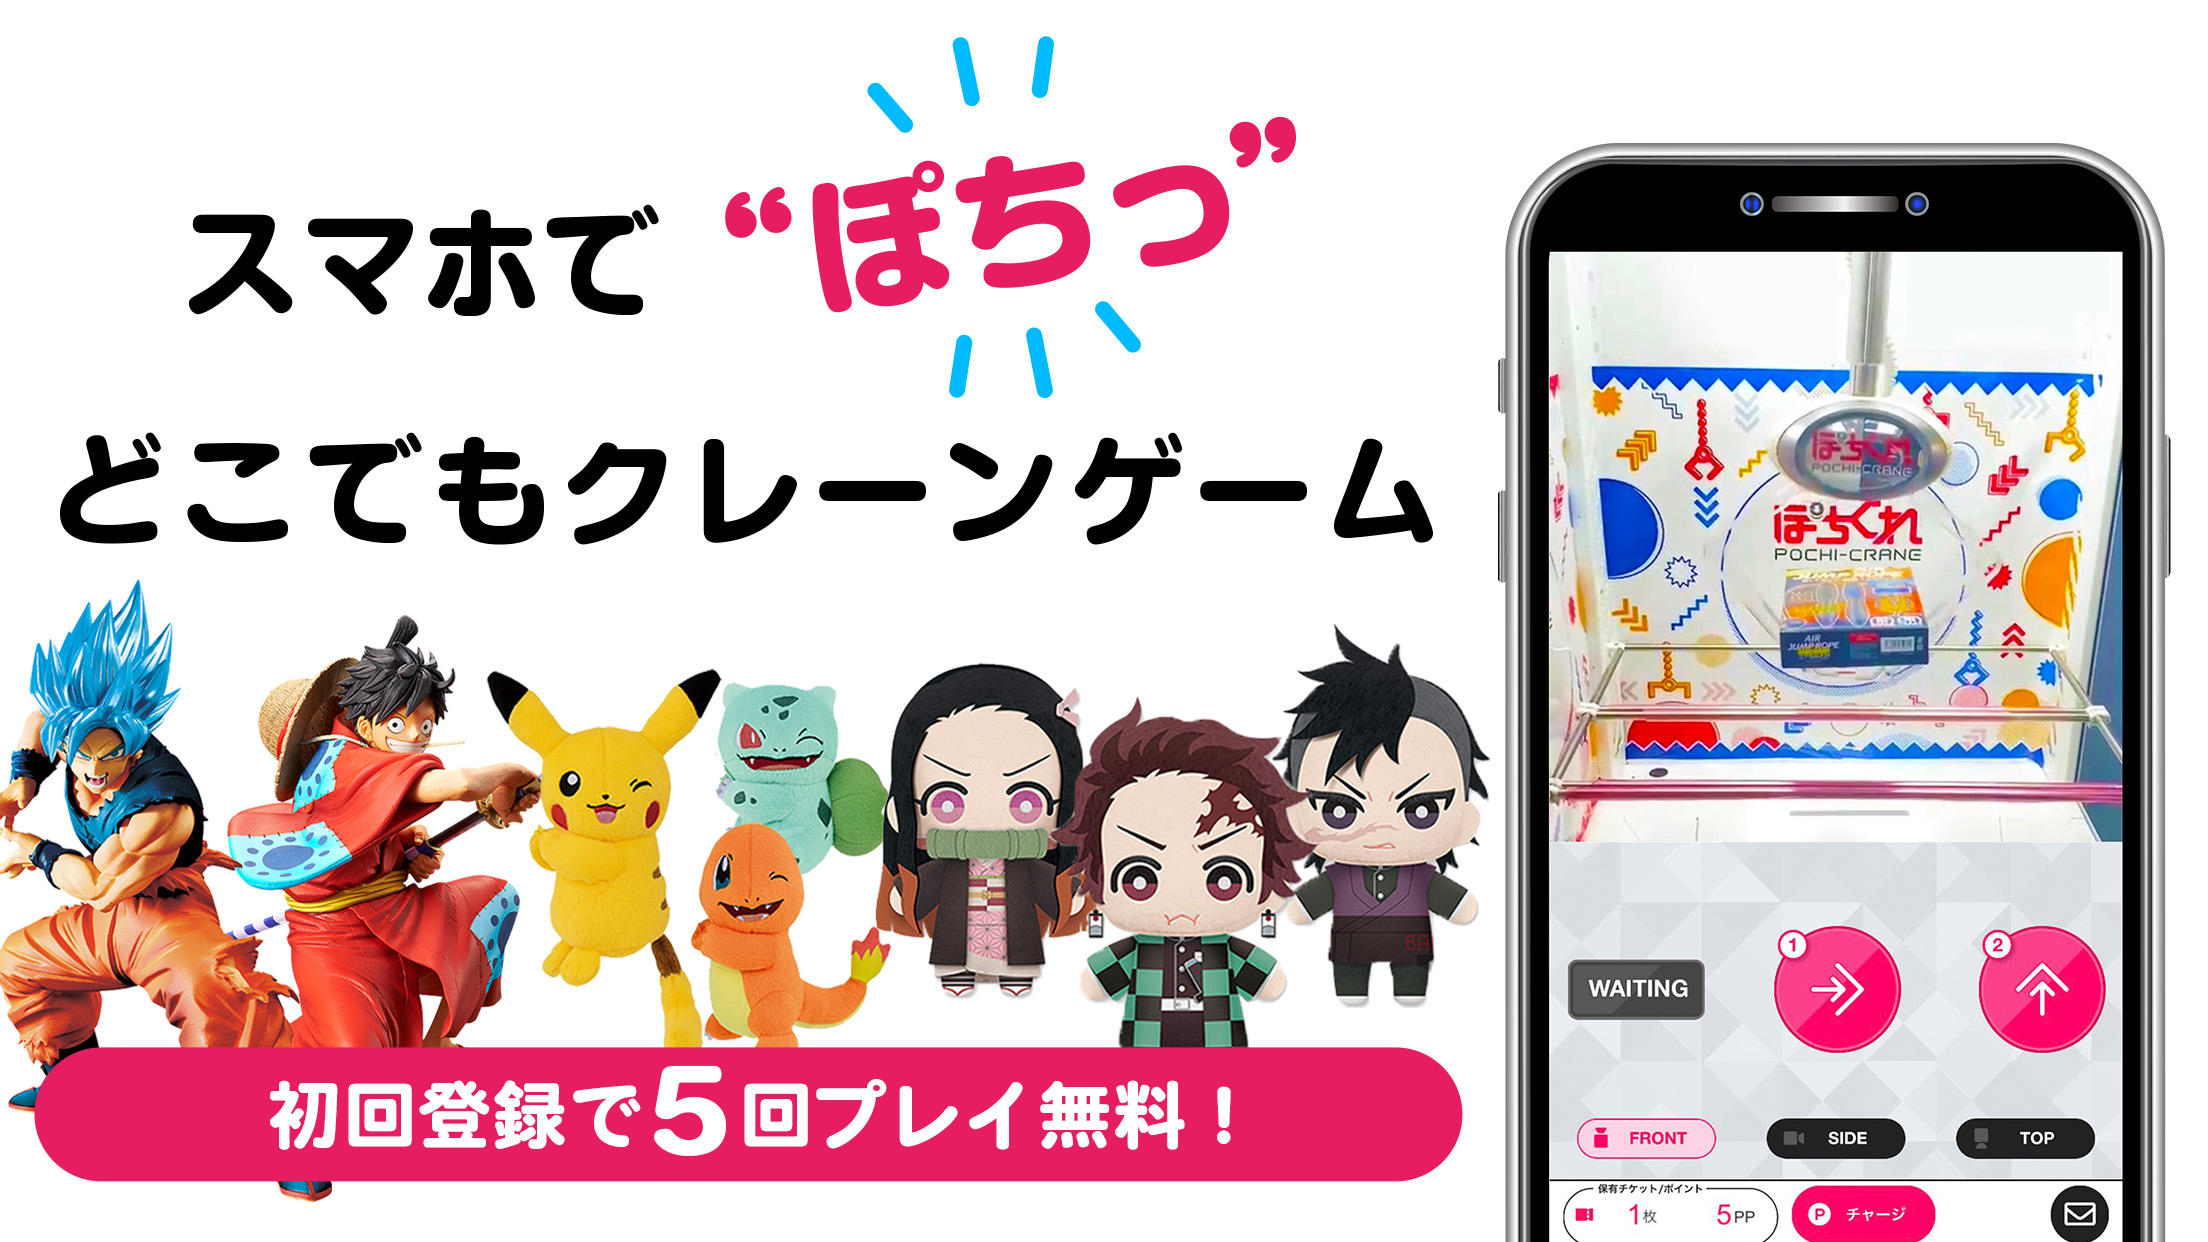 Screenshot 1 of "Pochikure" Game derek asli dengan smartphone 3.5.0